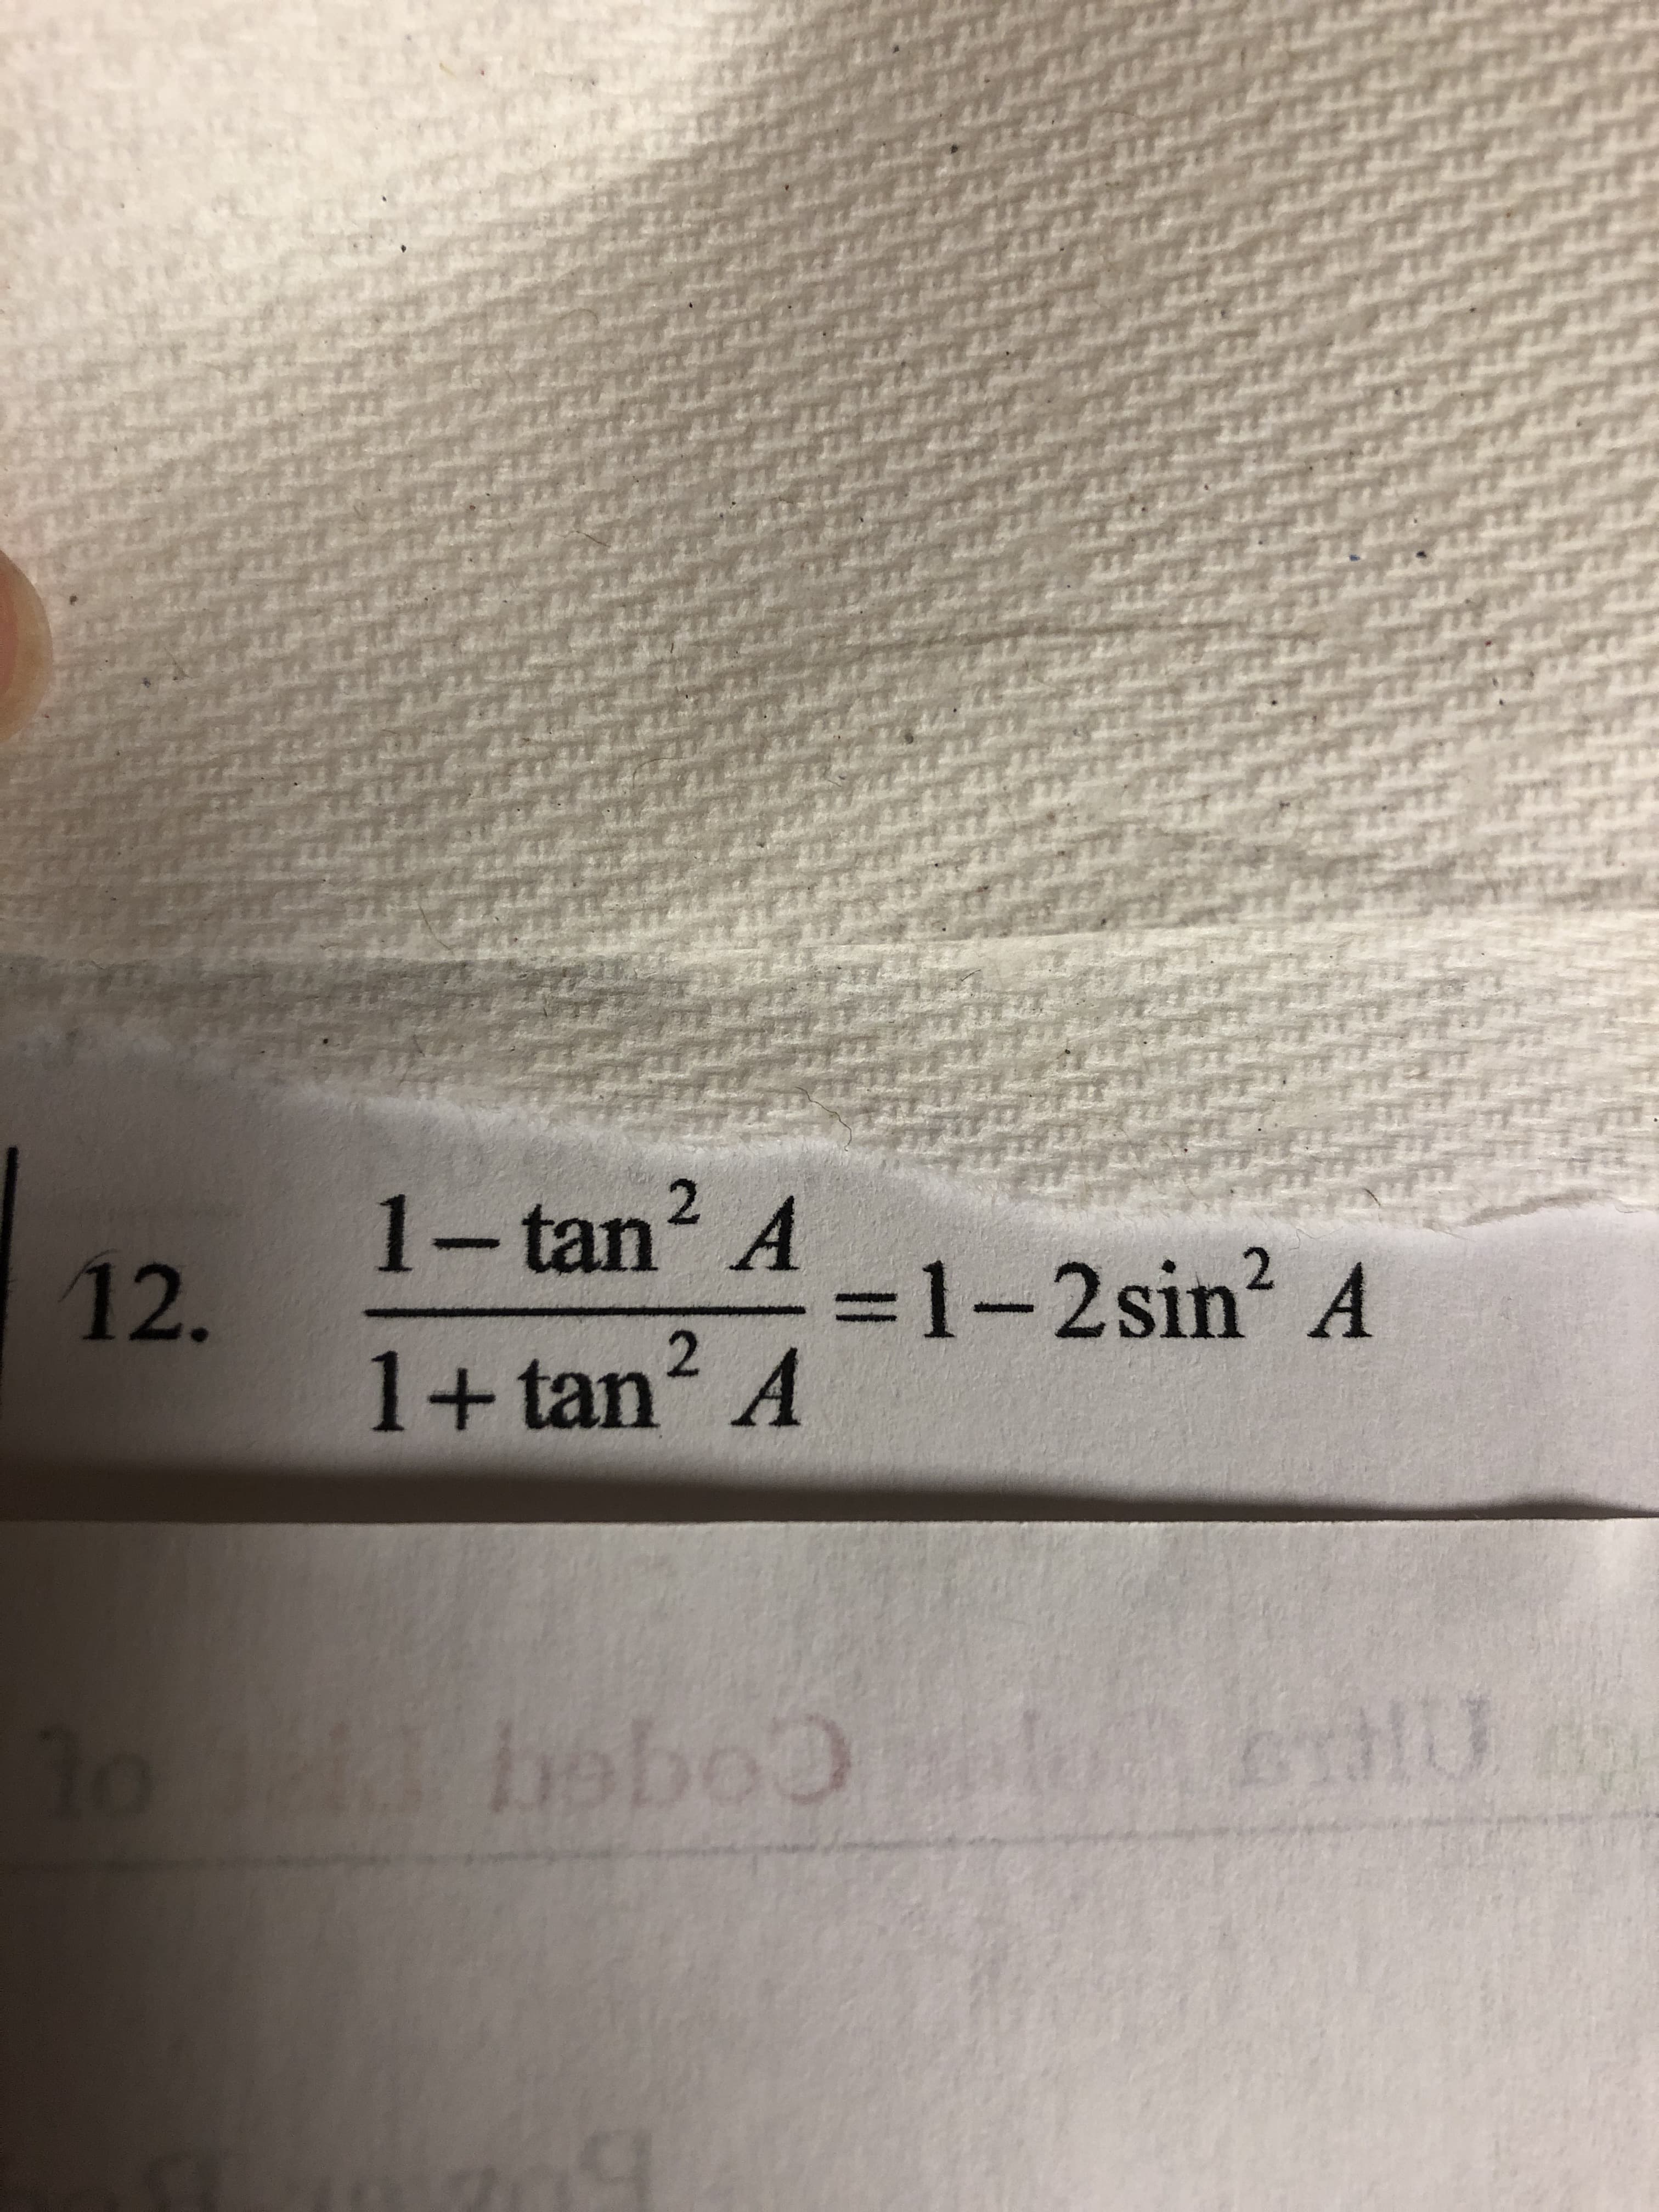 2.
1-tan? A
3D1-2sin2 A
2.
1+tan² A
